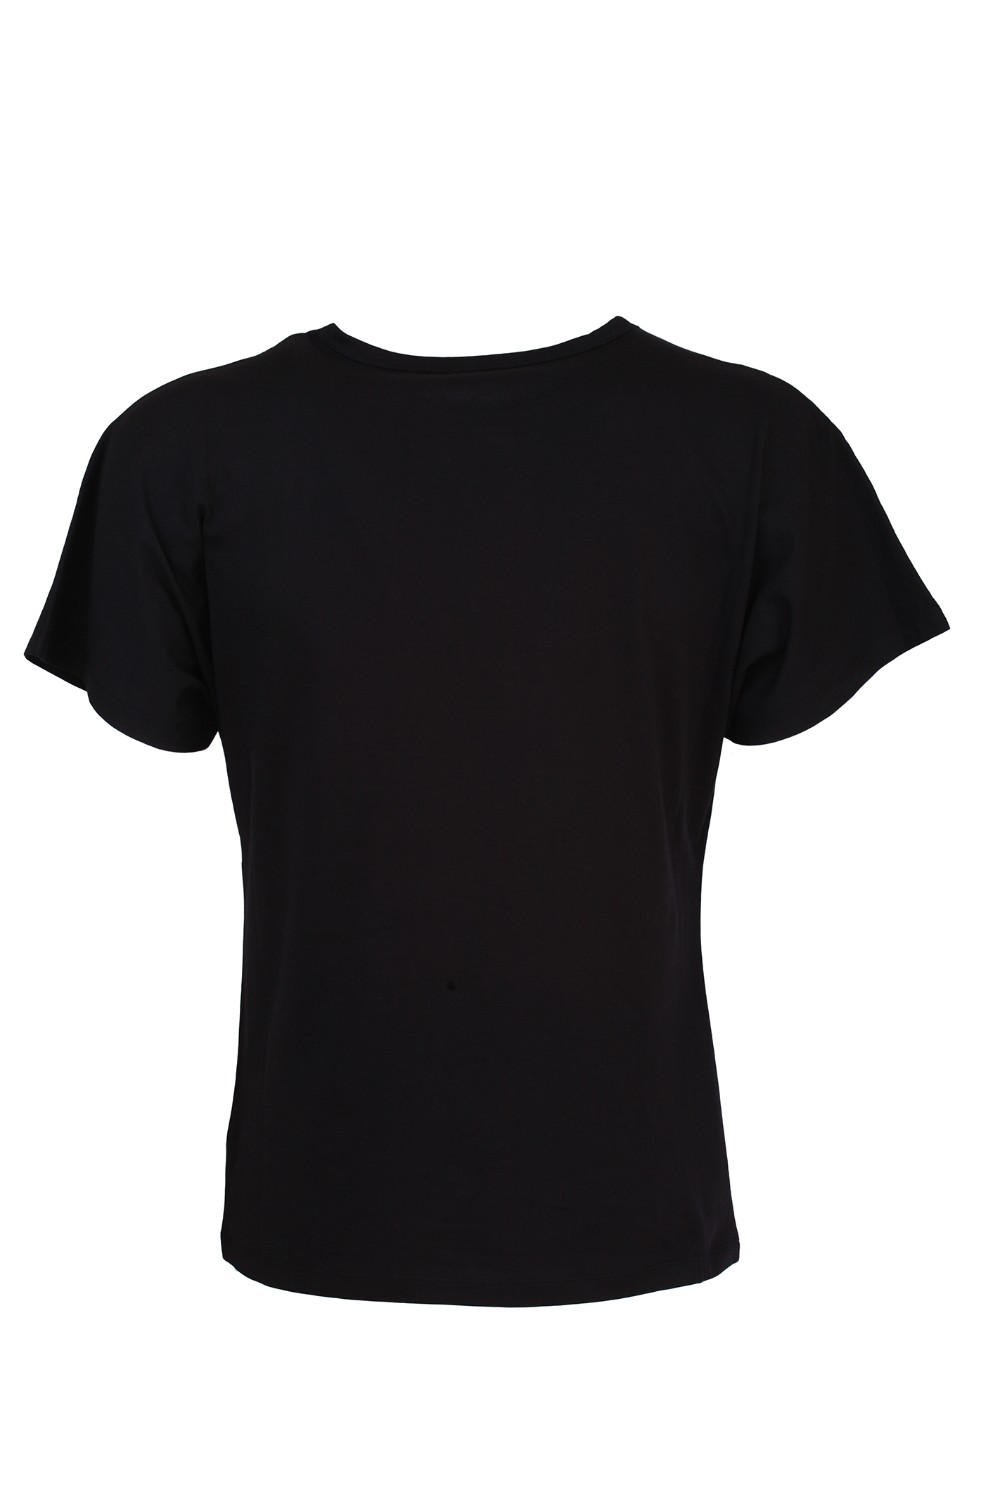 shop MONCLER Saldi T-shirt: Moncler T-shirt in cotone di colore nero con stampa Logo.
Girocollo.
Maniche corte.
Stampa grafica Logo a contrasto.
Vestibilità regolare.
Composizione: 100% cotone.. 8C707 10 V8094-999 number 5945748